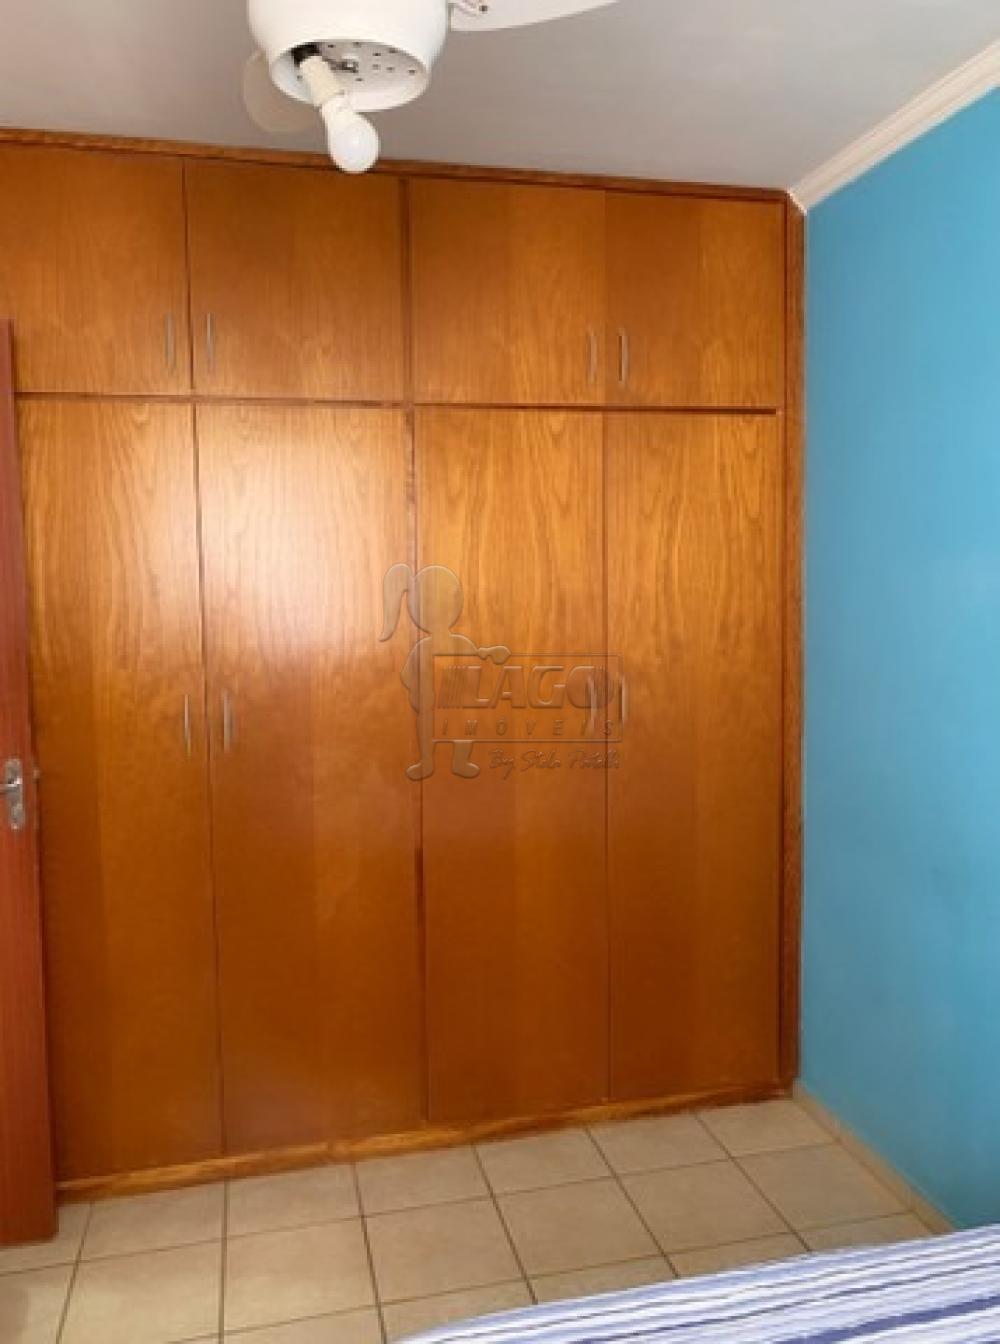 Comprar Apartamentos / Padrão em Ribeirão Preto R$ 181.000,00 - Foto 10